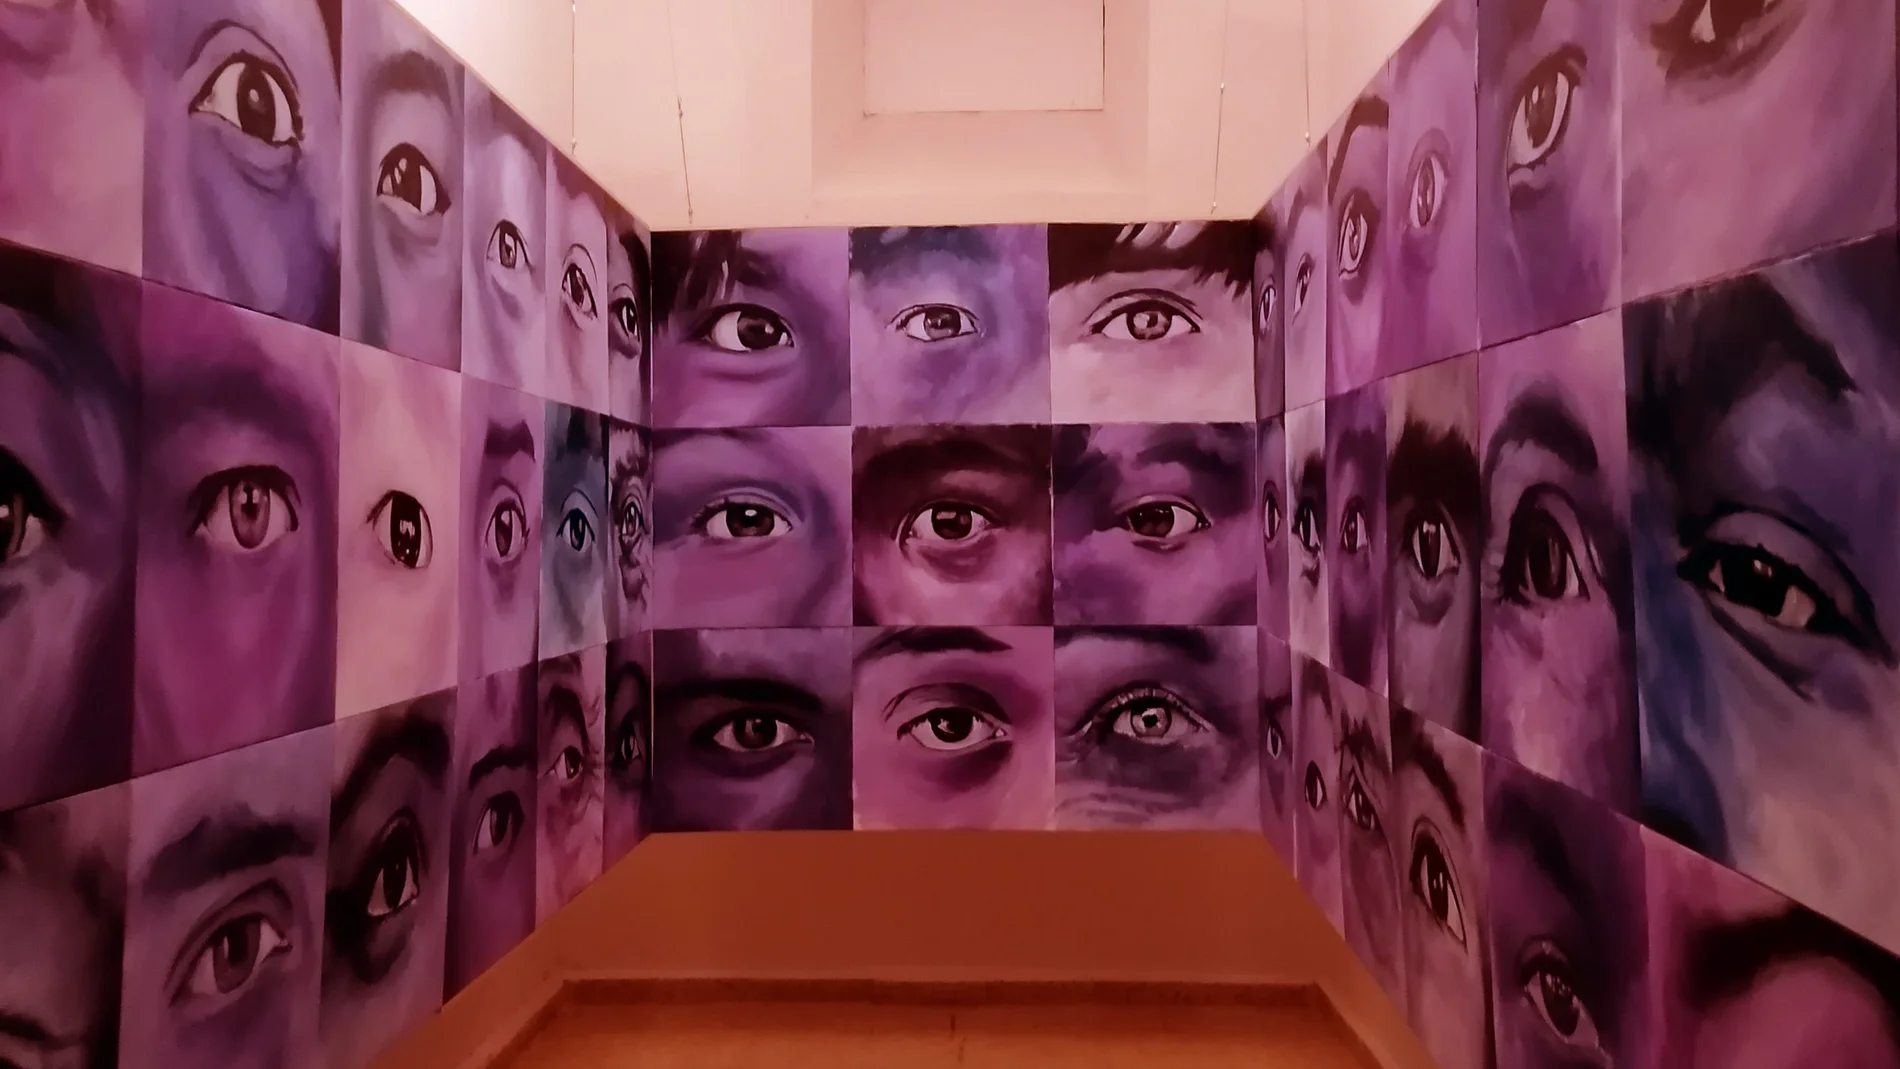 Exposición "Galerías" en la Cárcel de Segovia